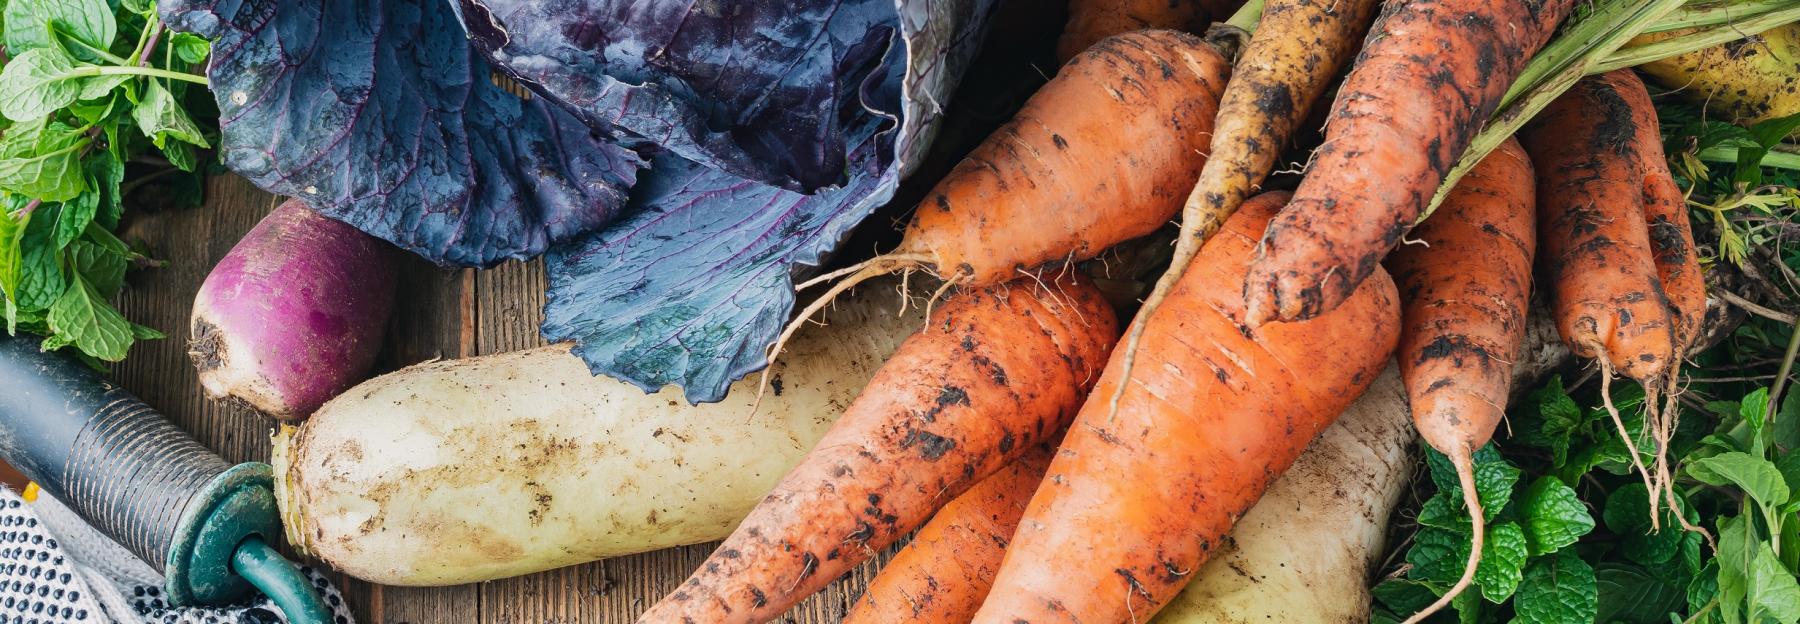 Rotkraut, Karotten und anderes Wintergemüse